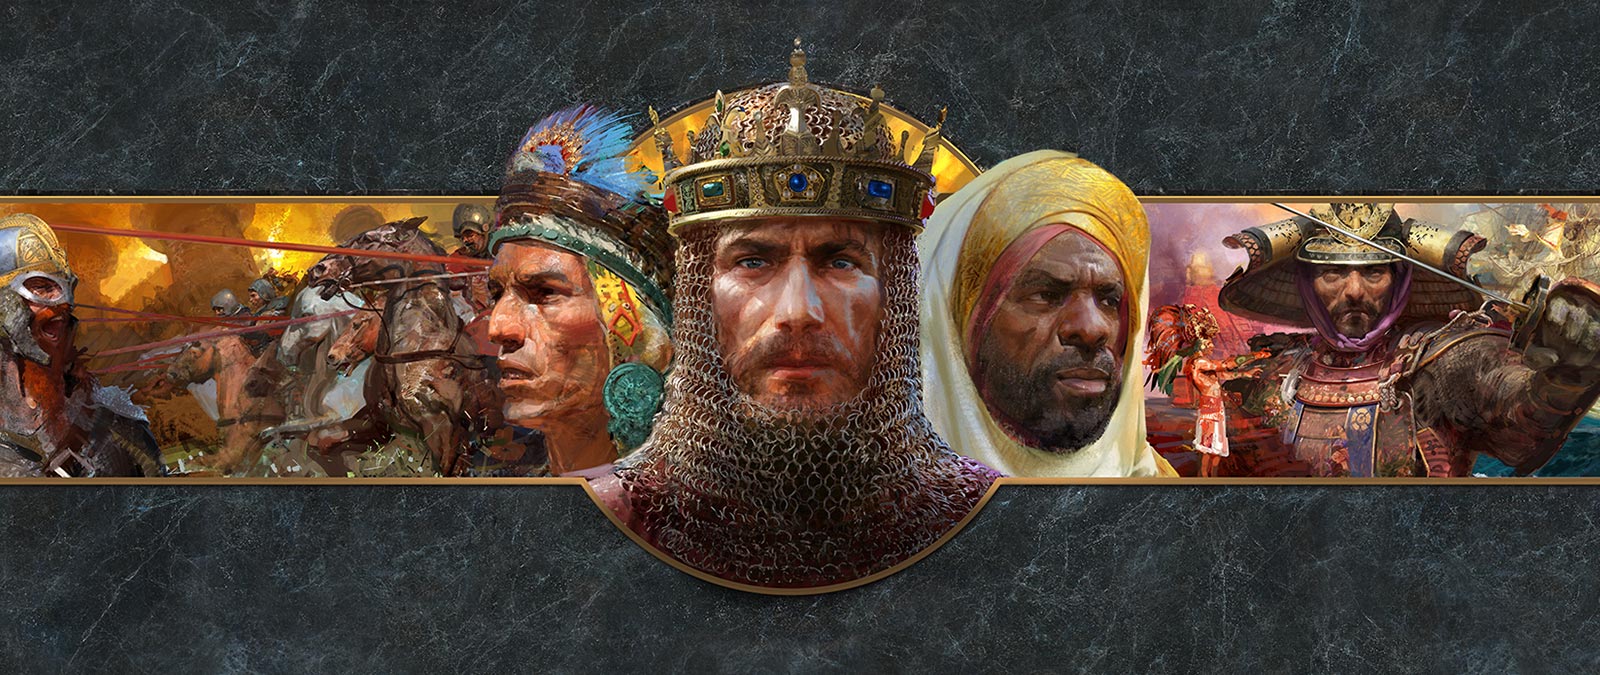 De hoofden van leiders van verschillende beschavingen worden getoond, met strijdscènes op de achtergrond.